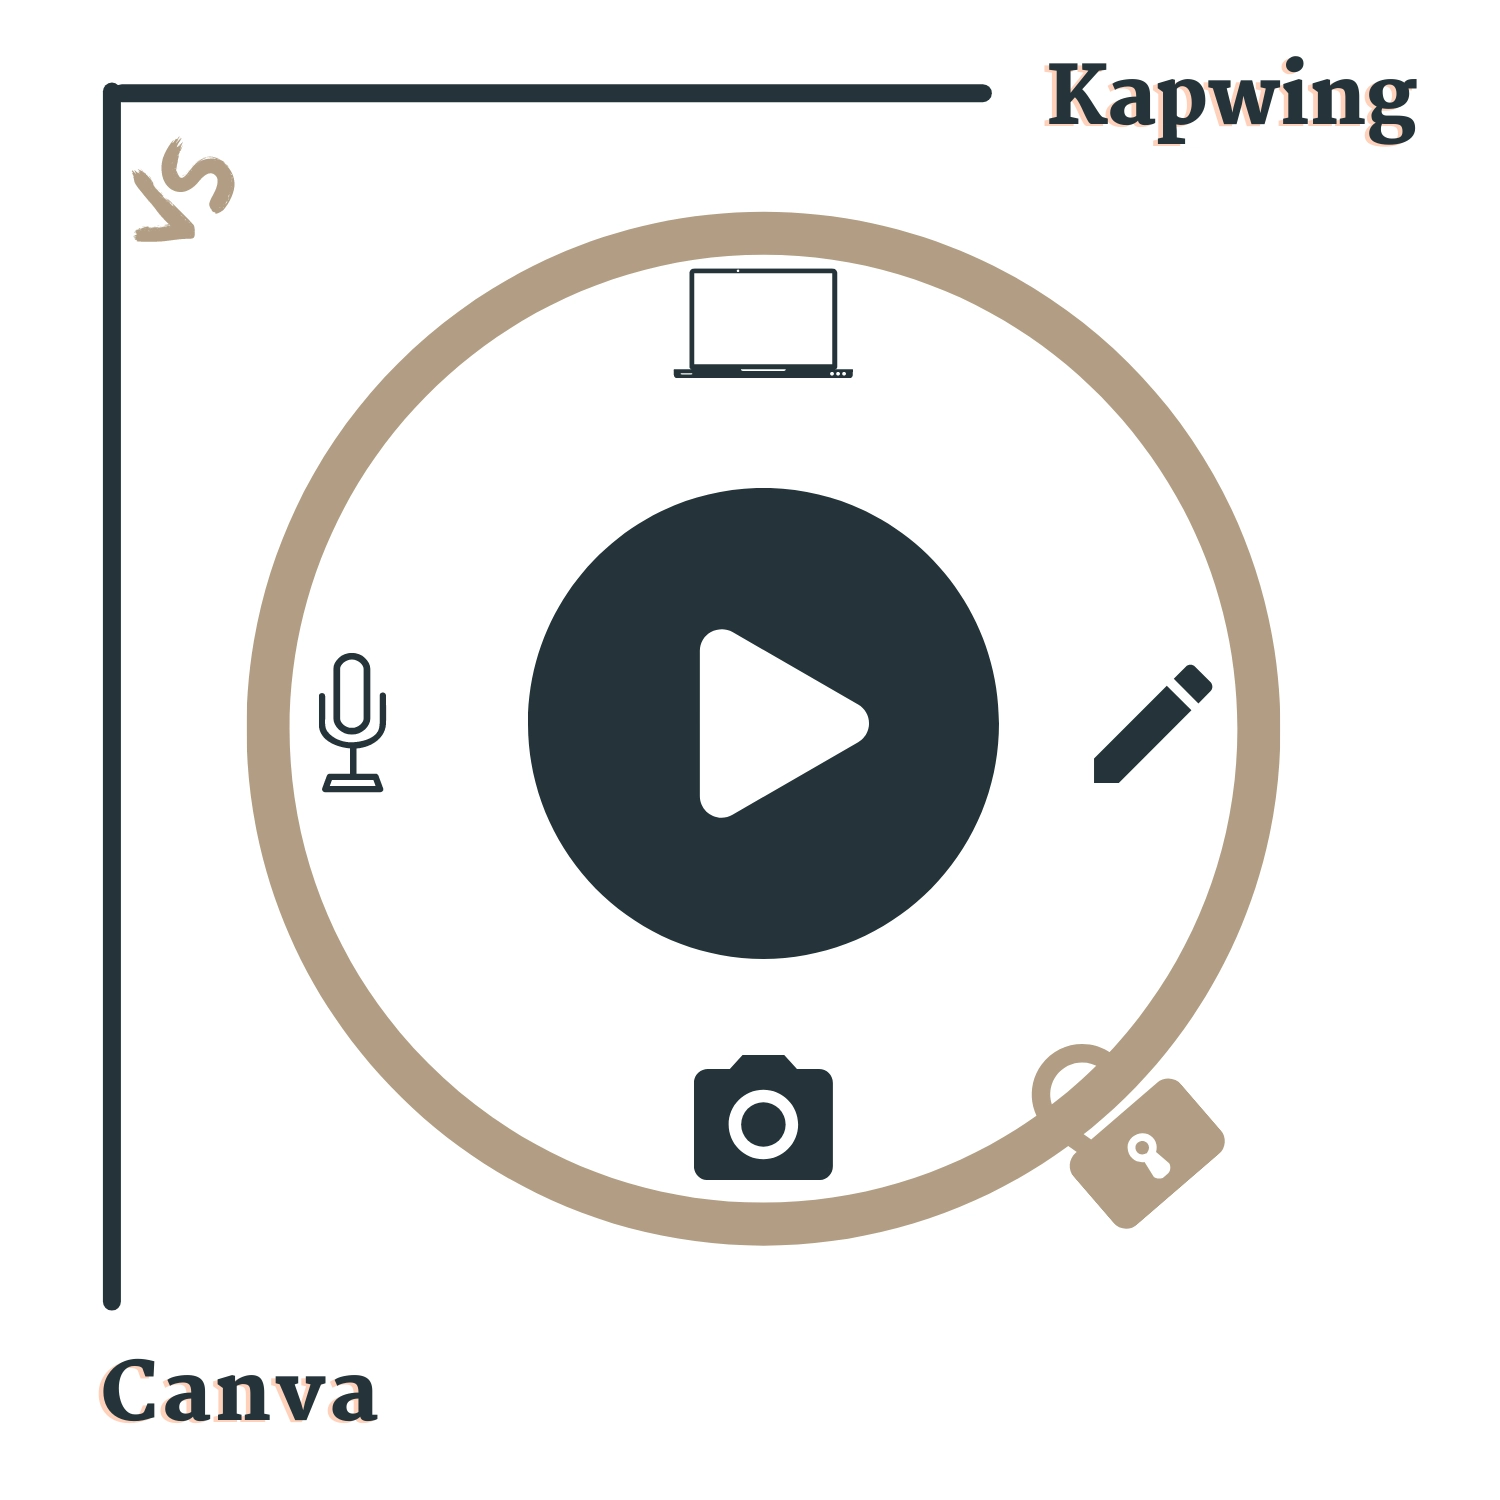 Kapwing vs. Canva